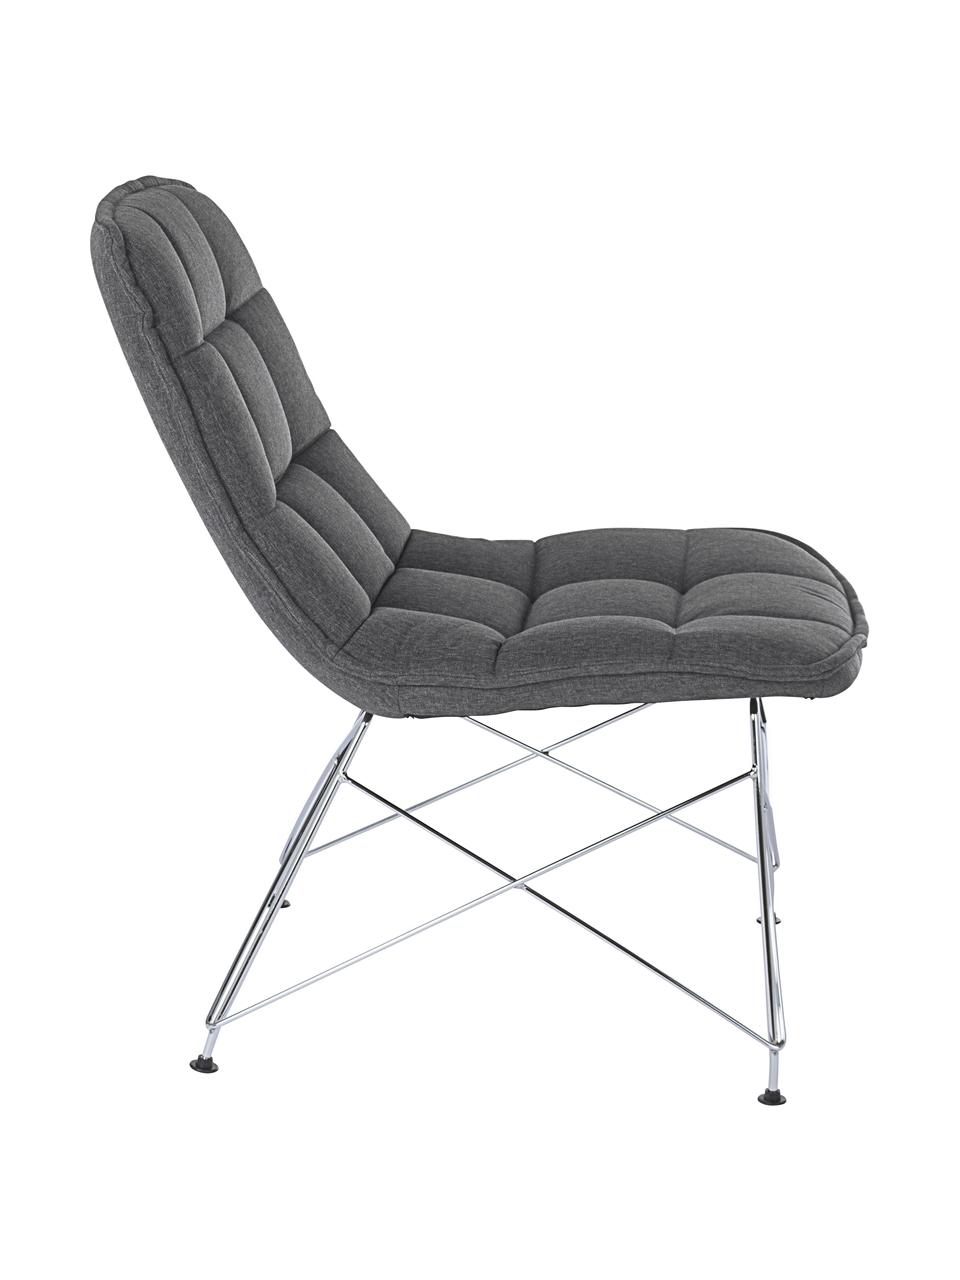 Fotel tapicerowany Akemi, Tapicerka: poliester, Nogi: metal chromowany, Szary, odcienie srebrnego, S 54 x G 71 cm